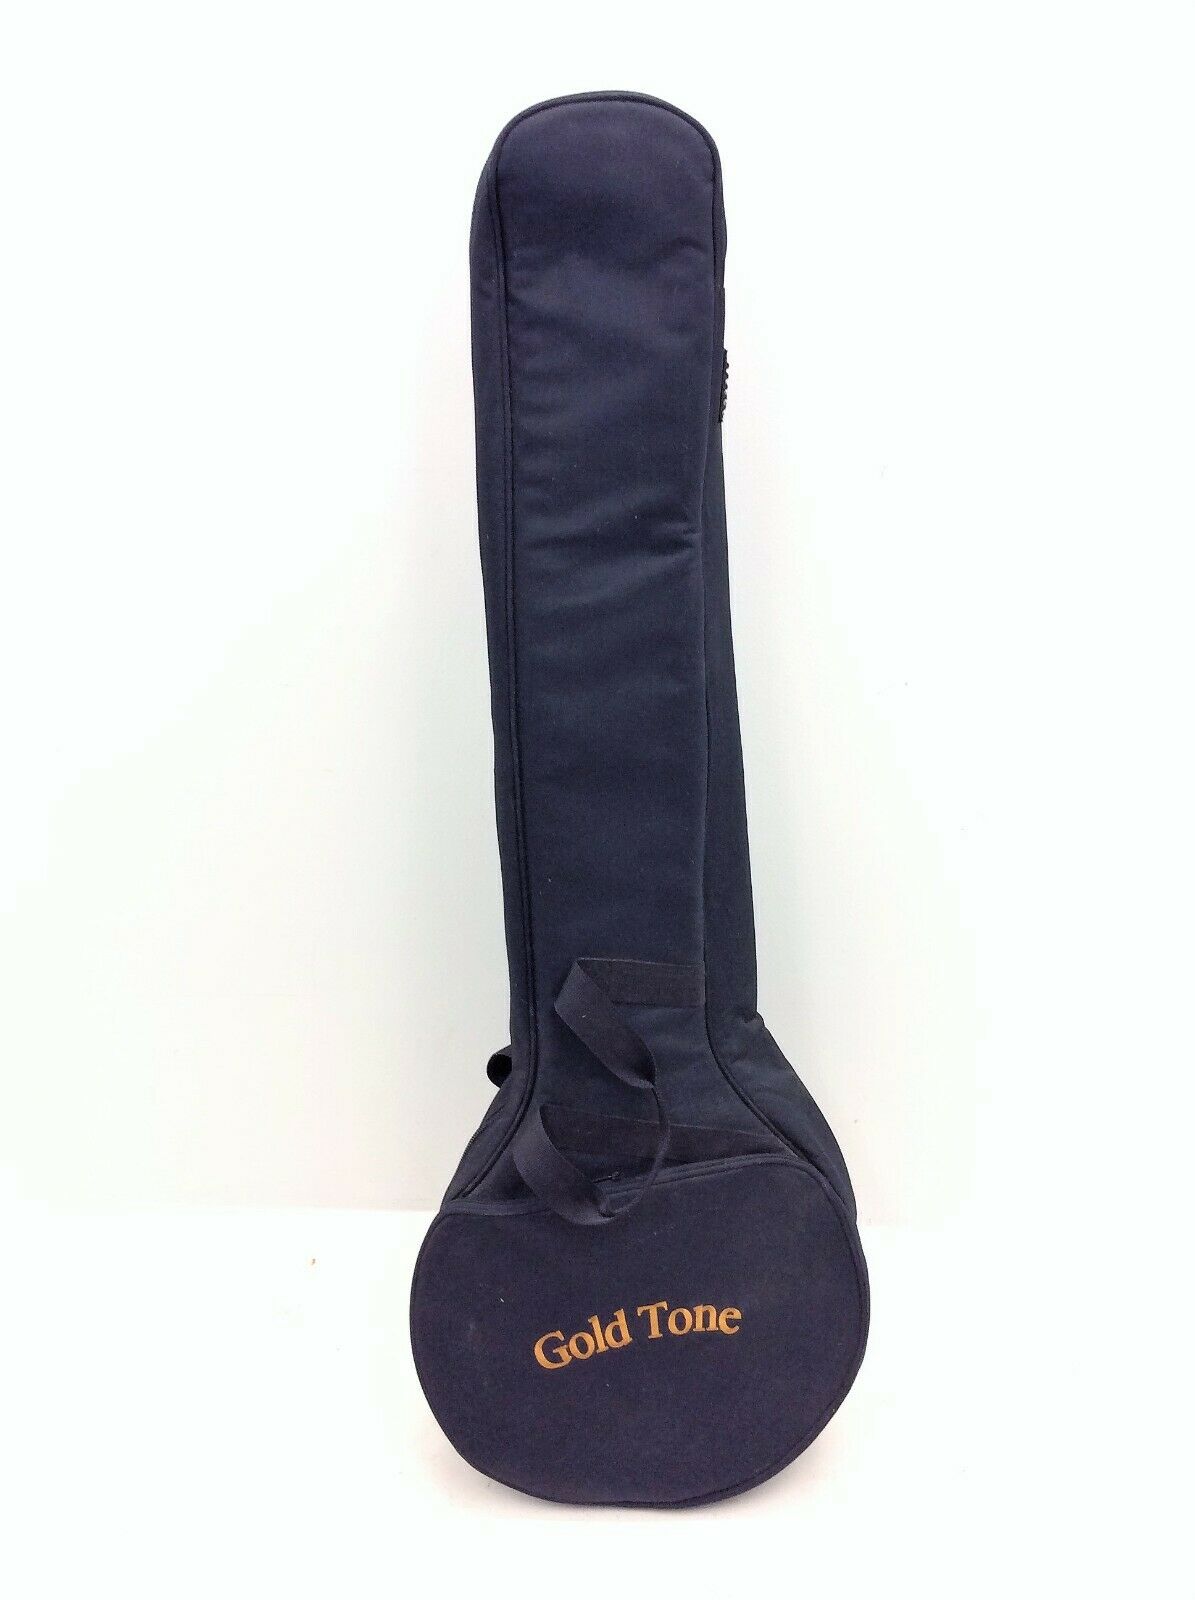 Vintage Used Black Gold Tone Travel Storage Banjo Soft Case 45.75” Instrument